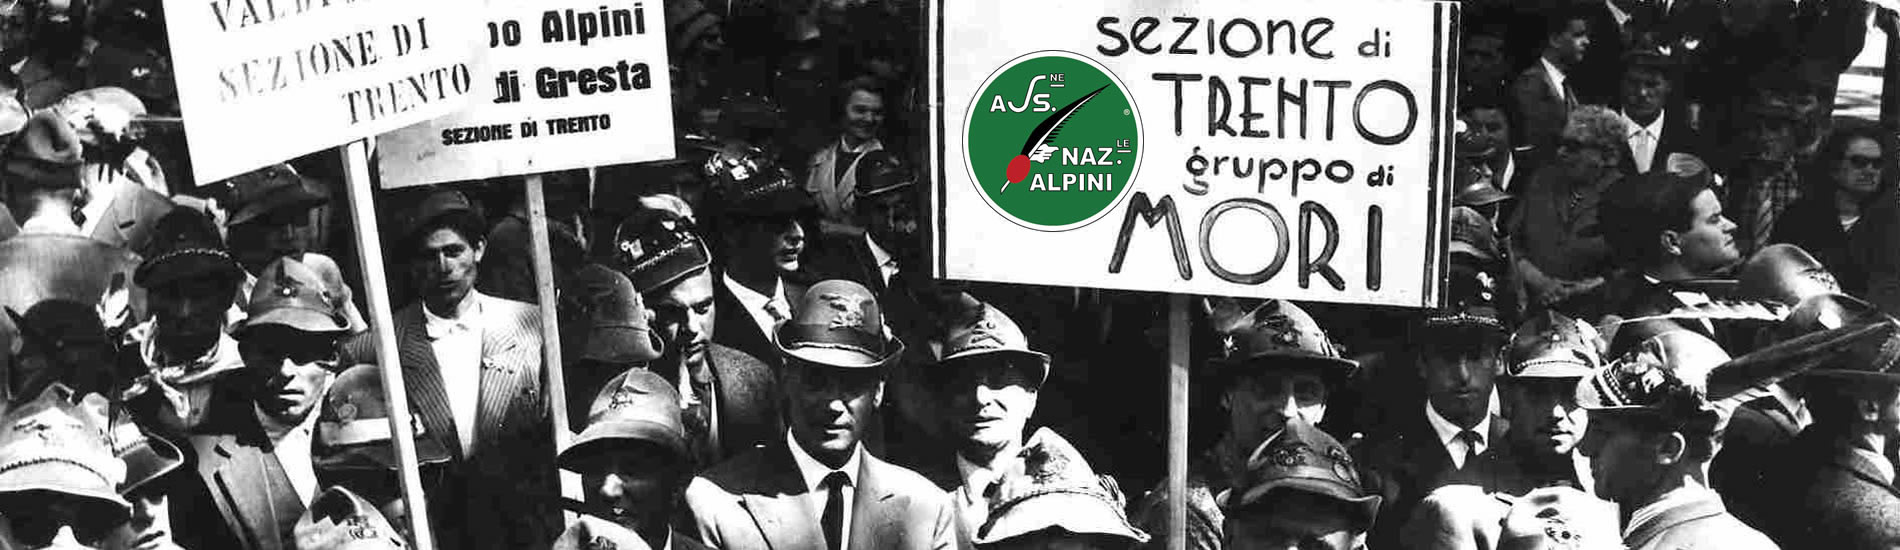 Adunata Nazionale Alpini Torino